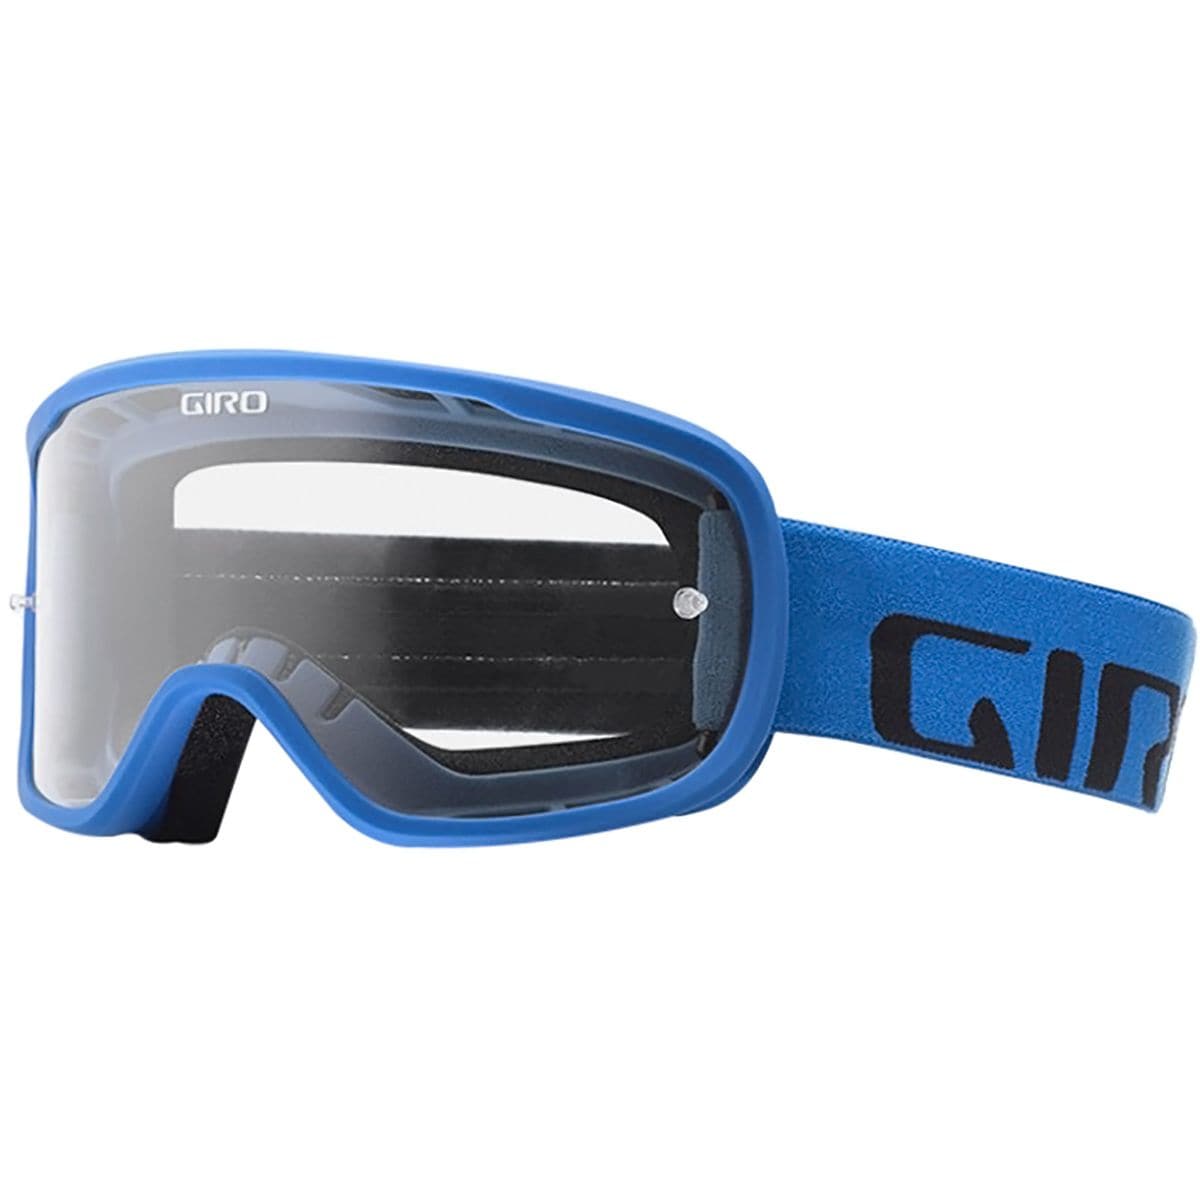 Giro Tempo MTB Goggles